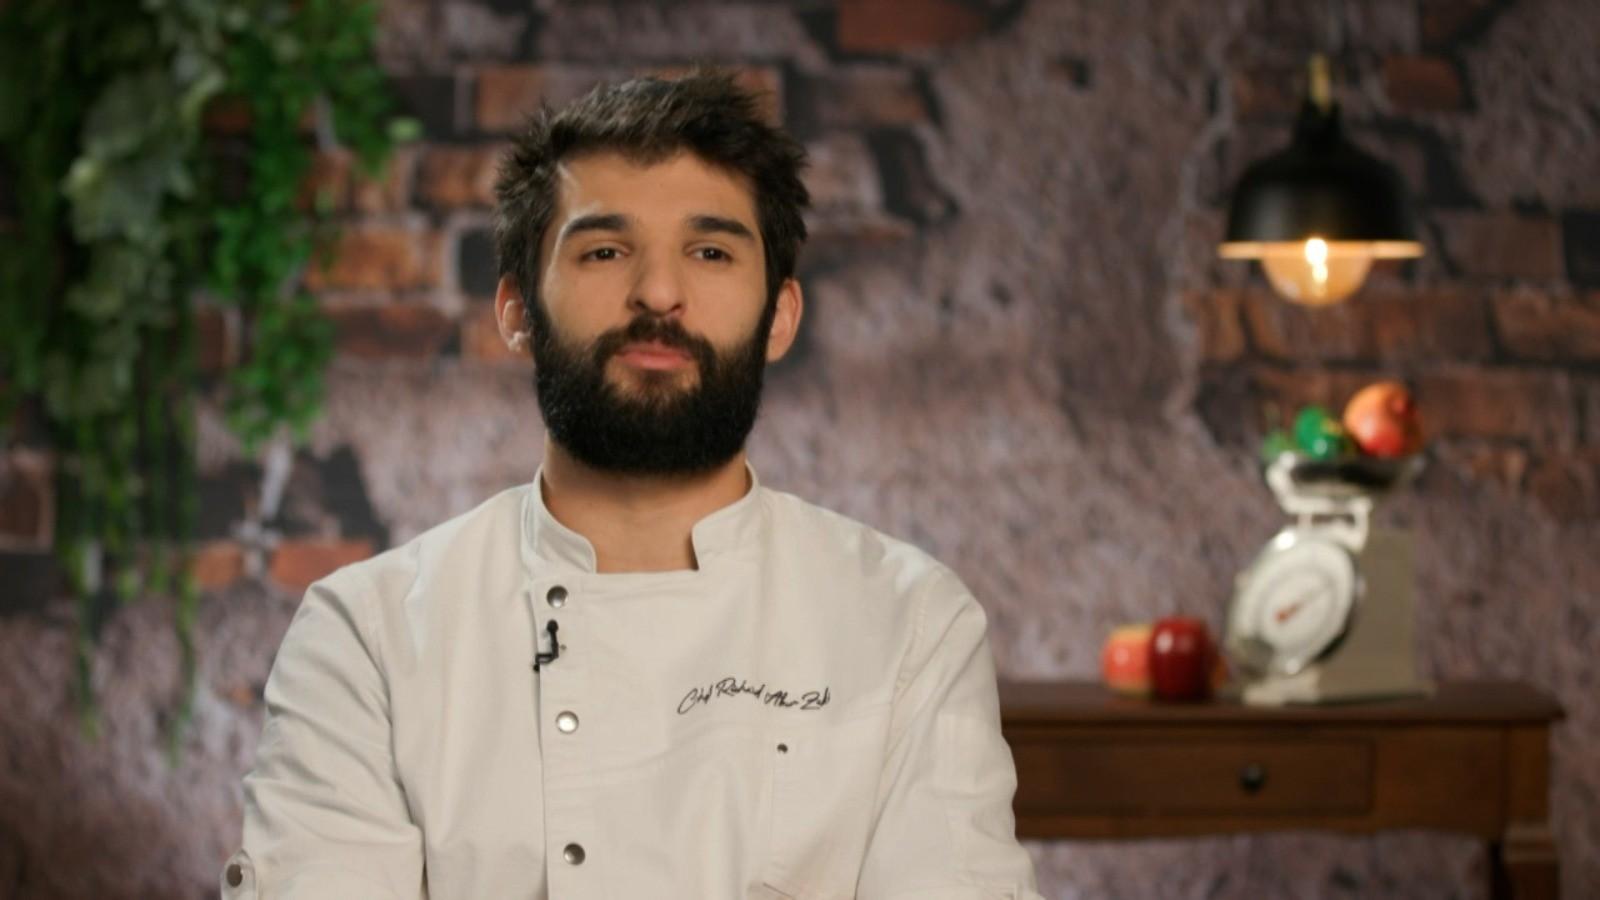 Richard Abou Zaki, il miglior chef d’Italia.  La giuria “Chefi la Cutițe” ha vinto il premio più importante del settore gastronomico